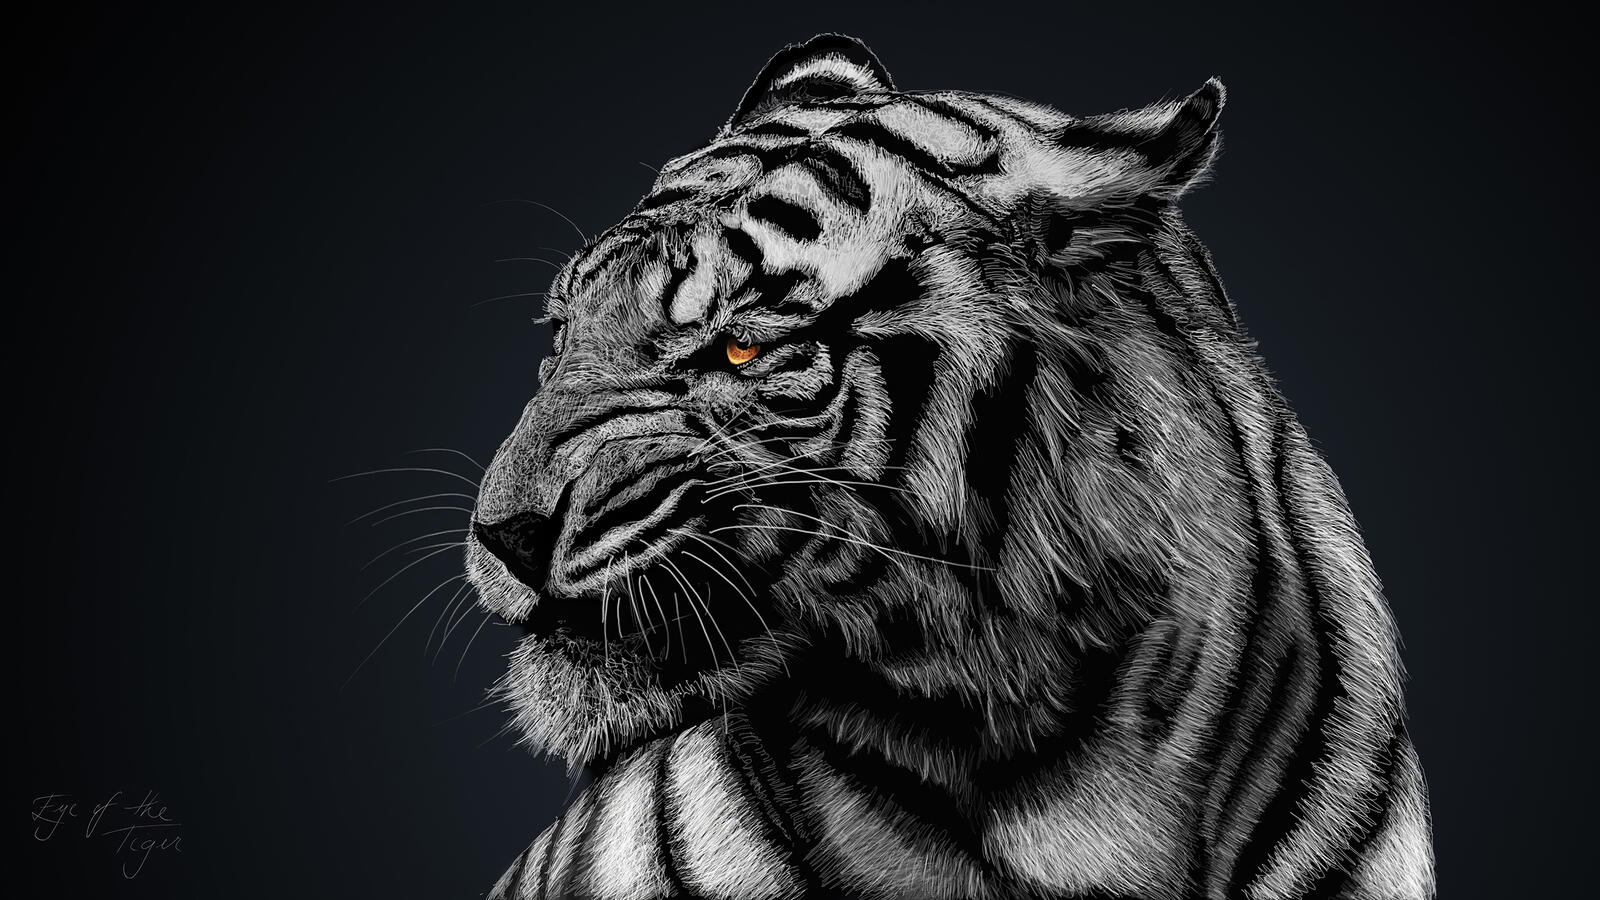 Бесплатное фото Злой тигр на монохромном фото